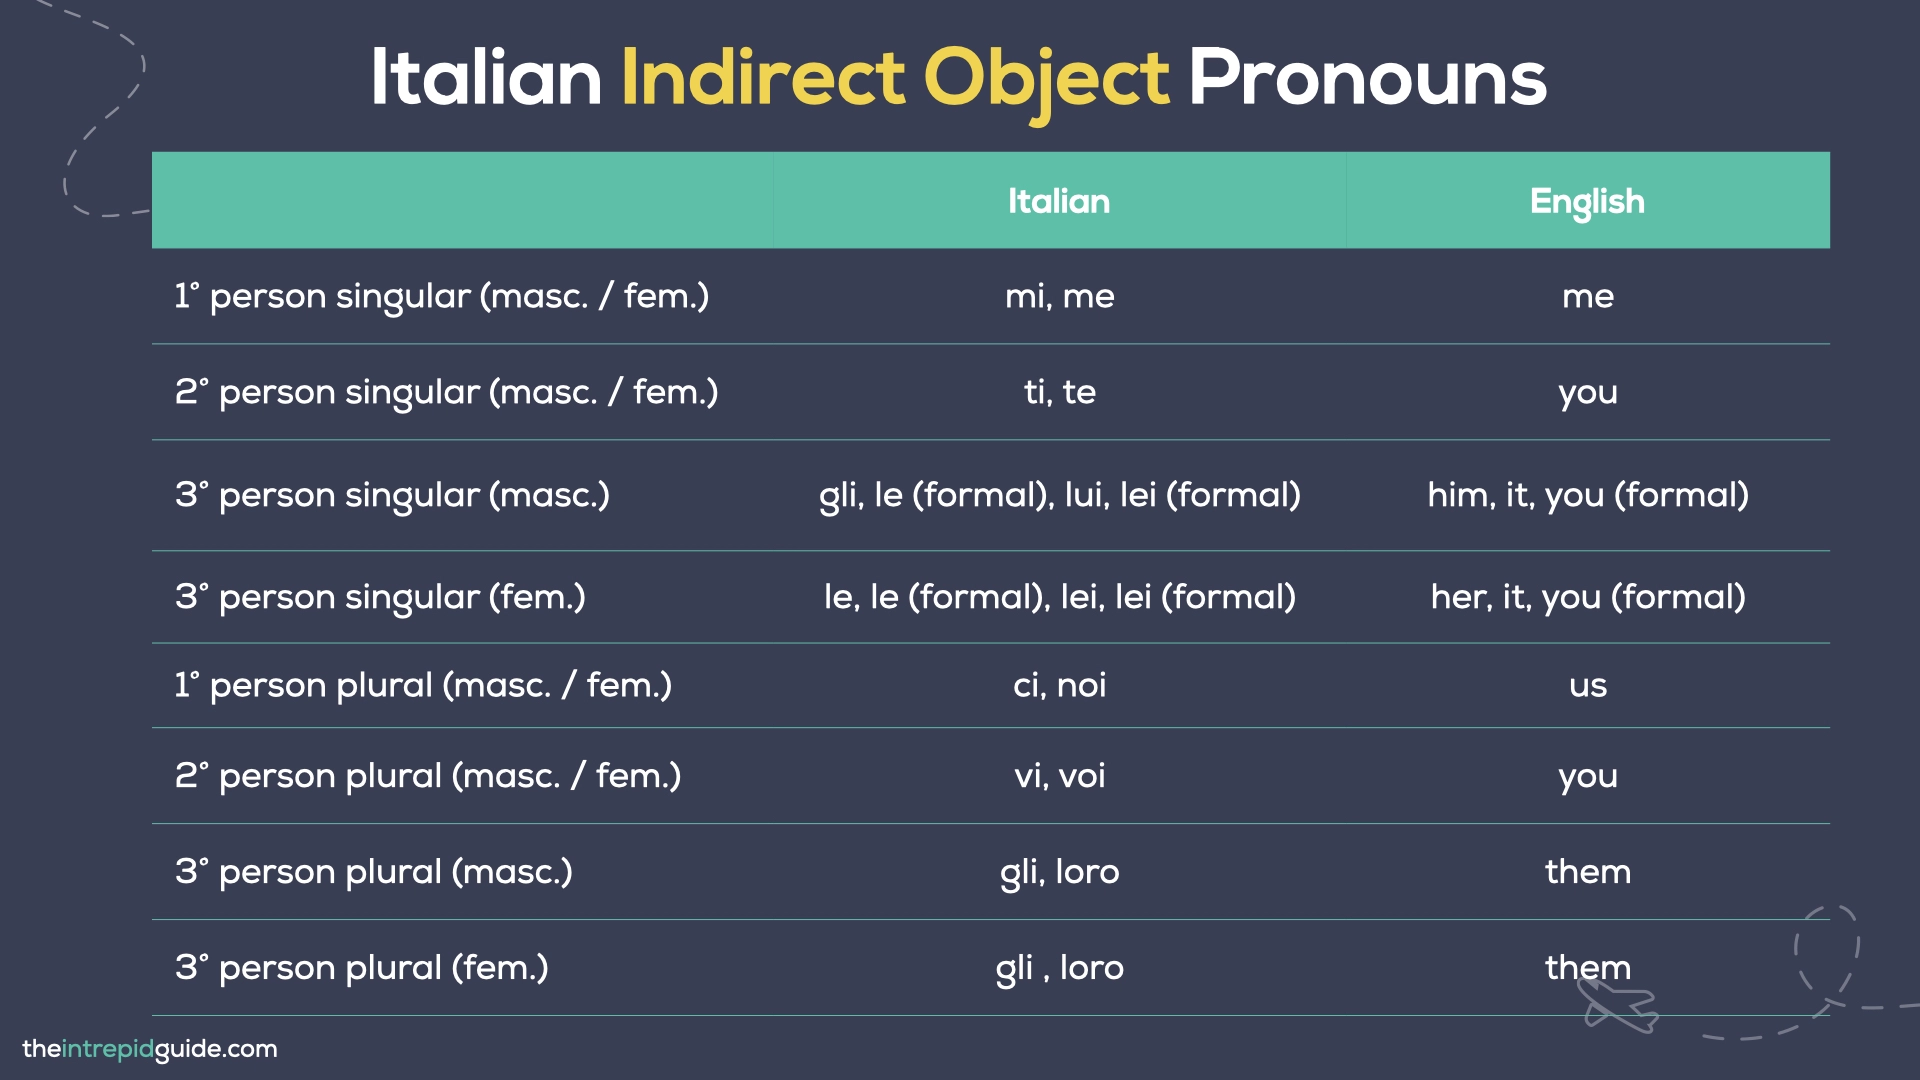 Italian Pronouns - Italian Indirect Object Pronouns Chart